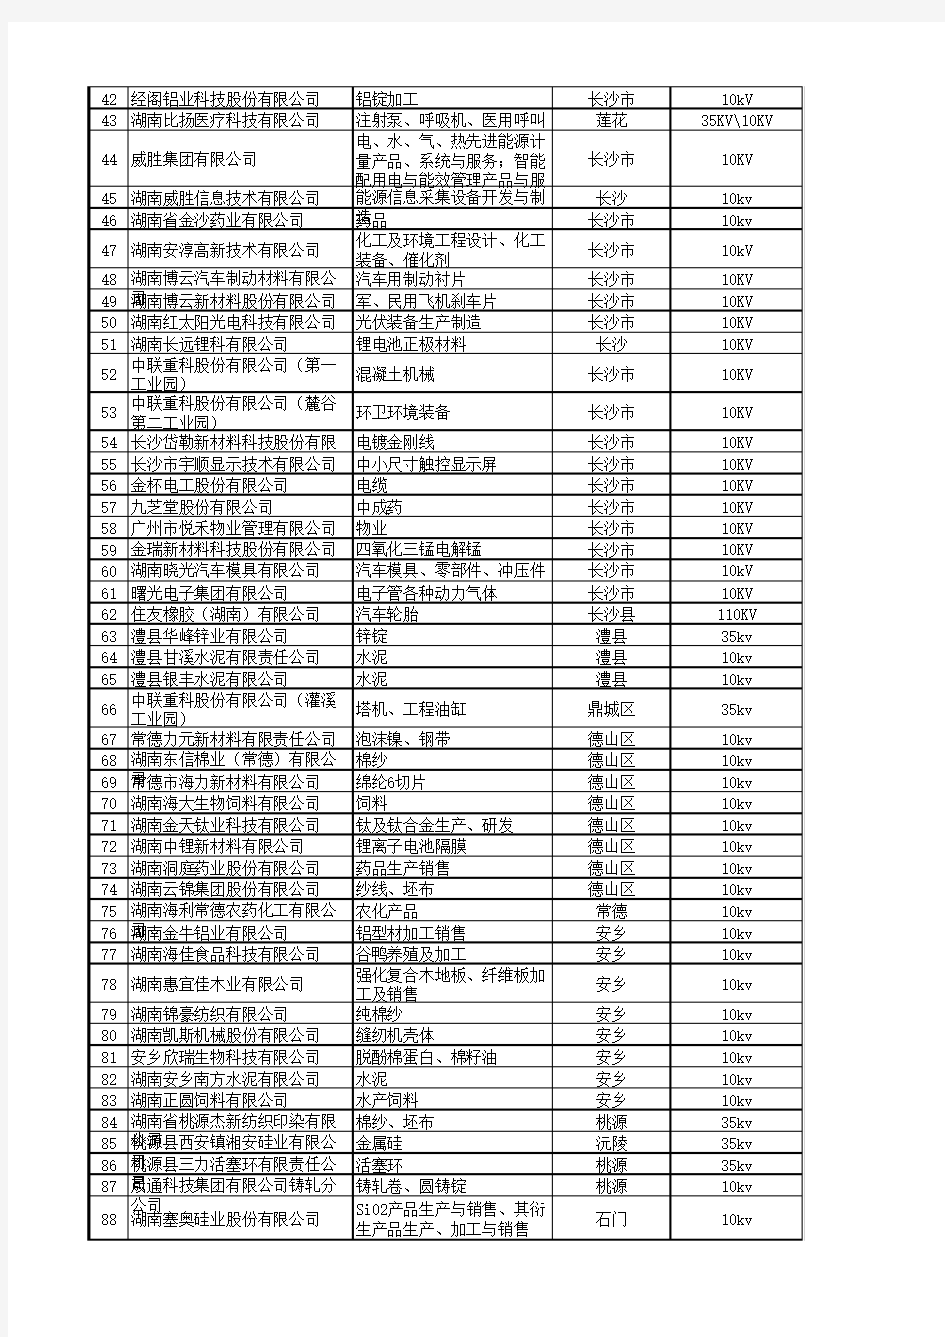 湖南省年耗电500万kwh企业目录(2017版)